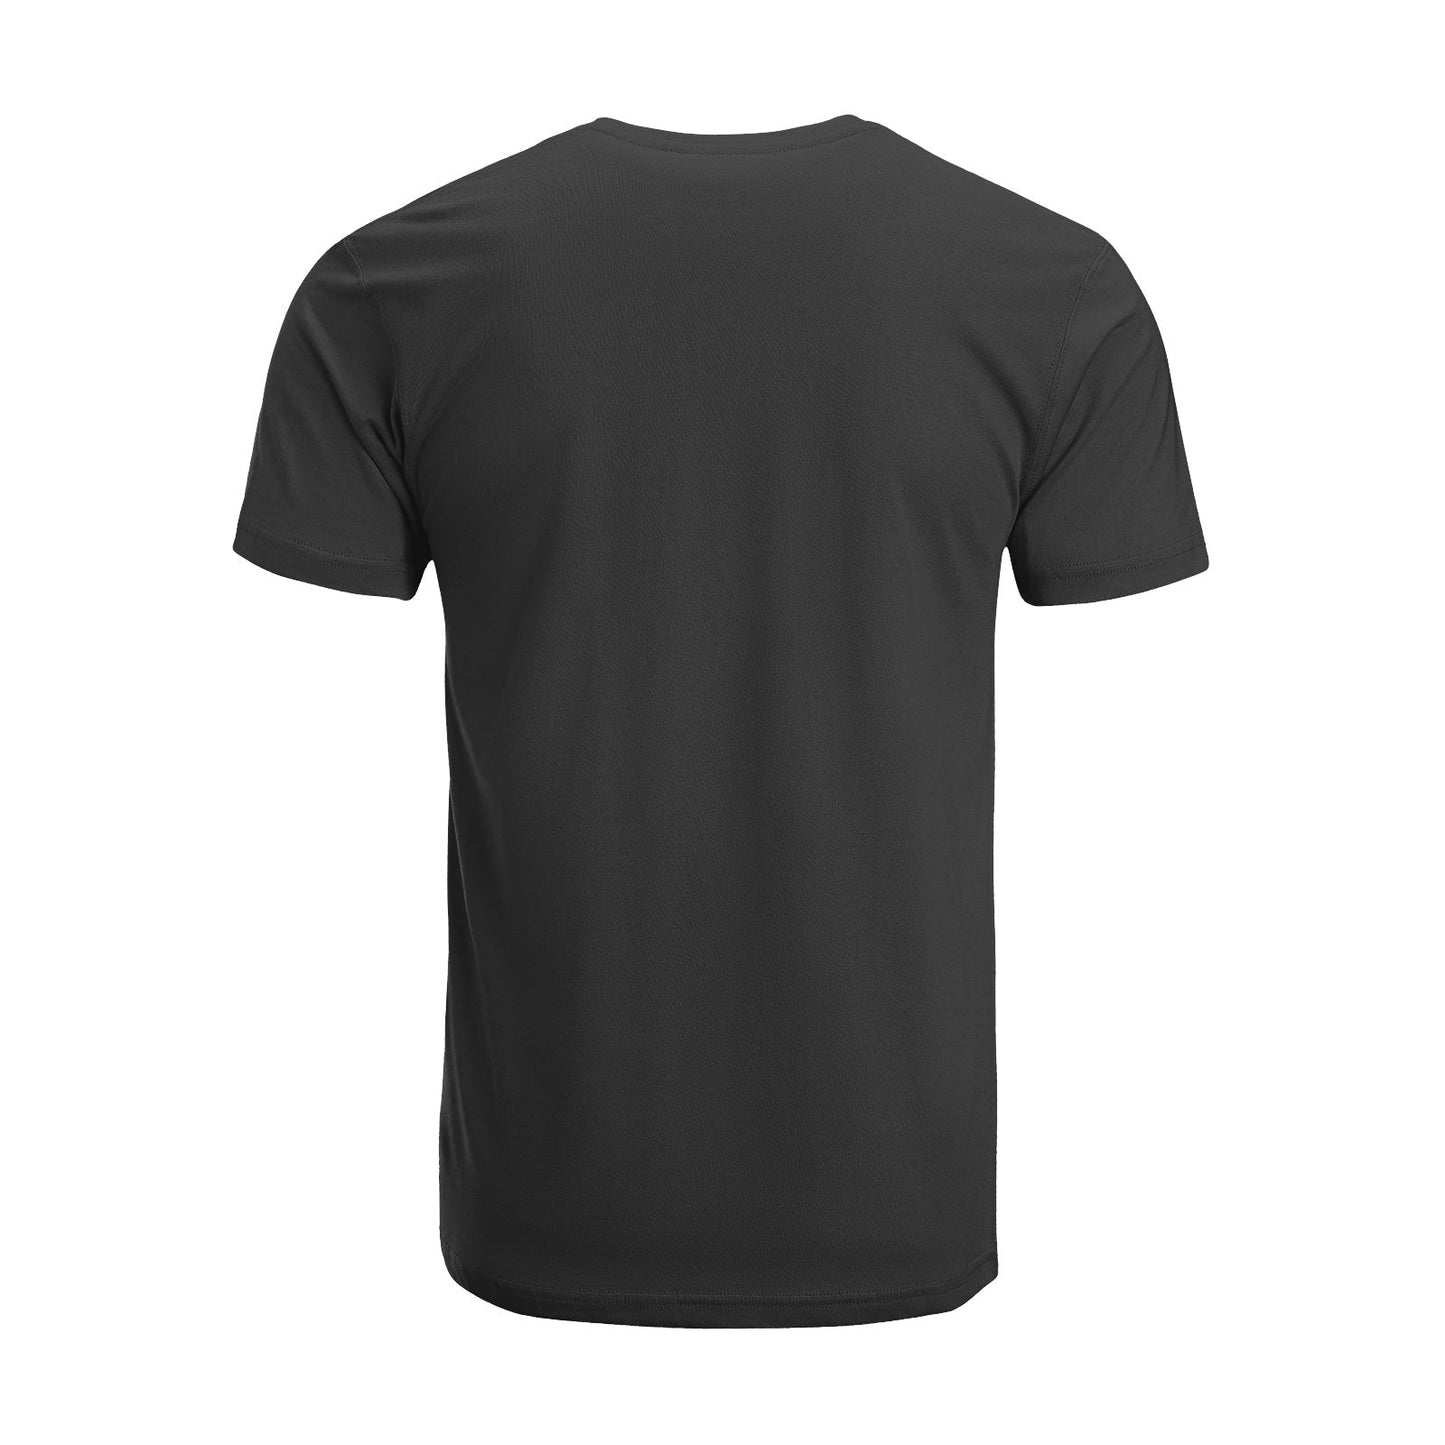 Unisex Short Sleeve Crew Neck Cotton Jersey T-Shirt TRUCK 35